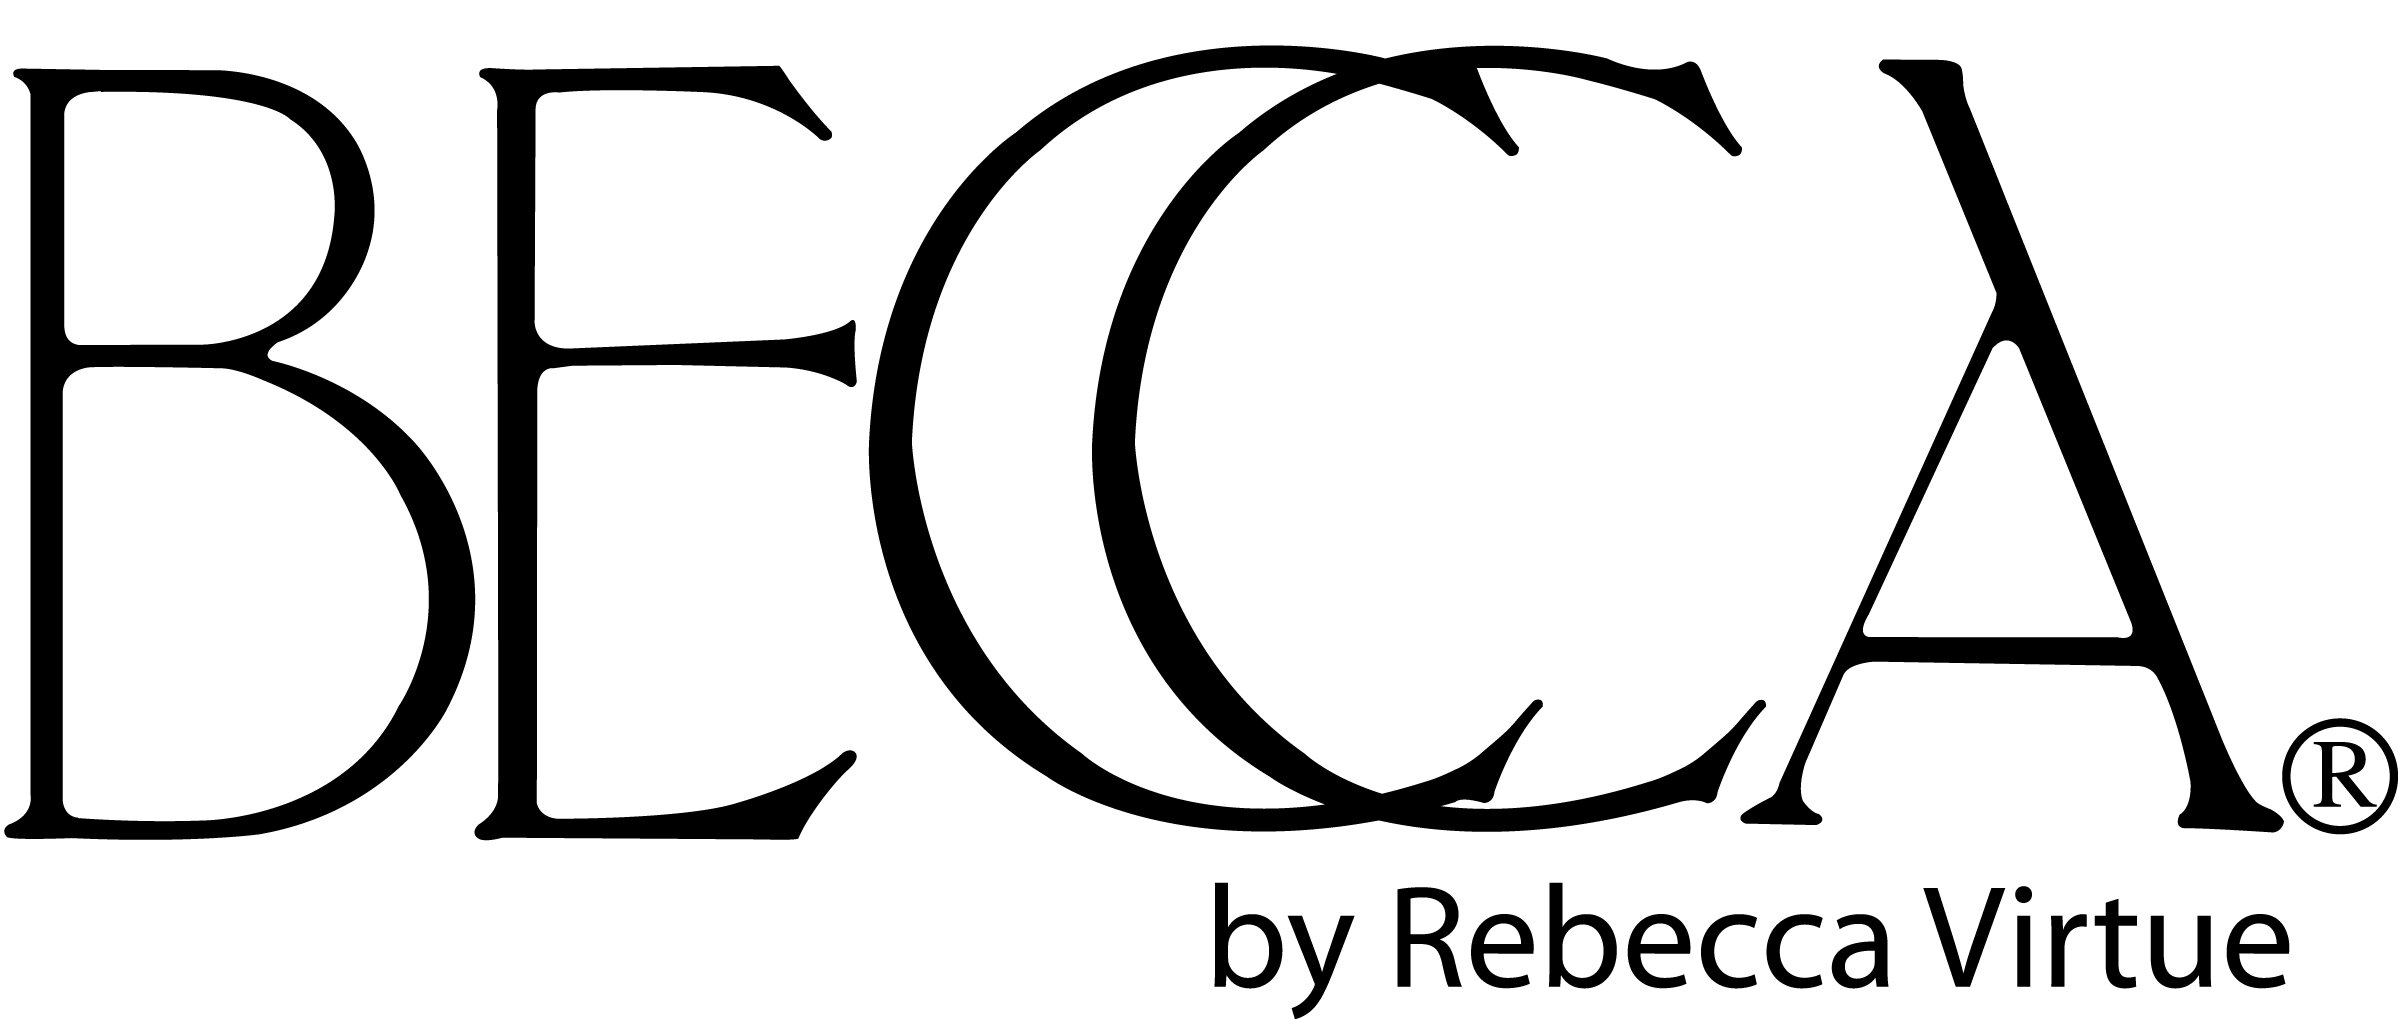 Becca Logo (2).jpg